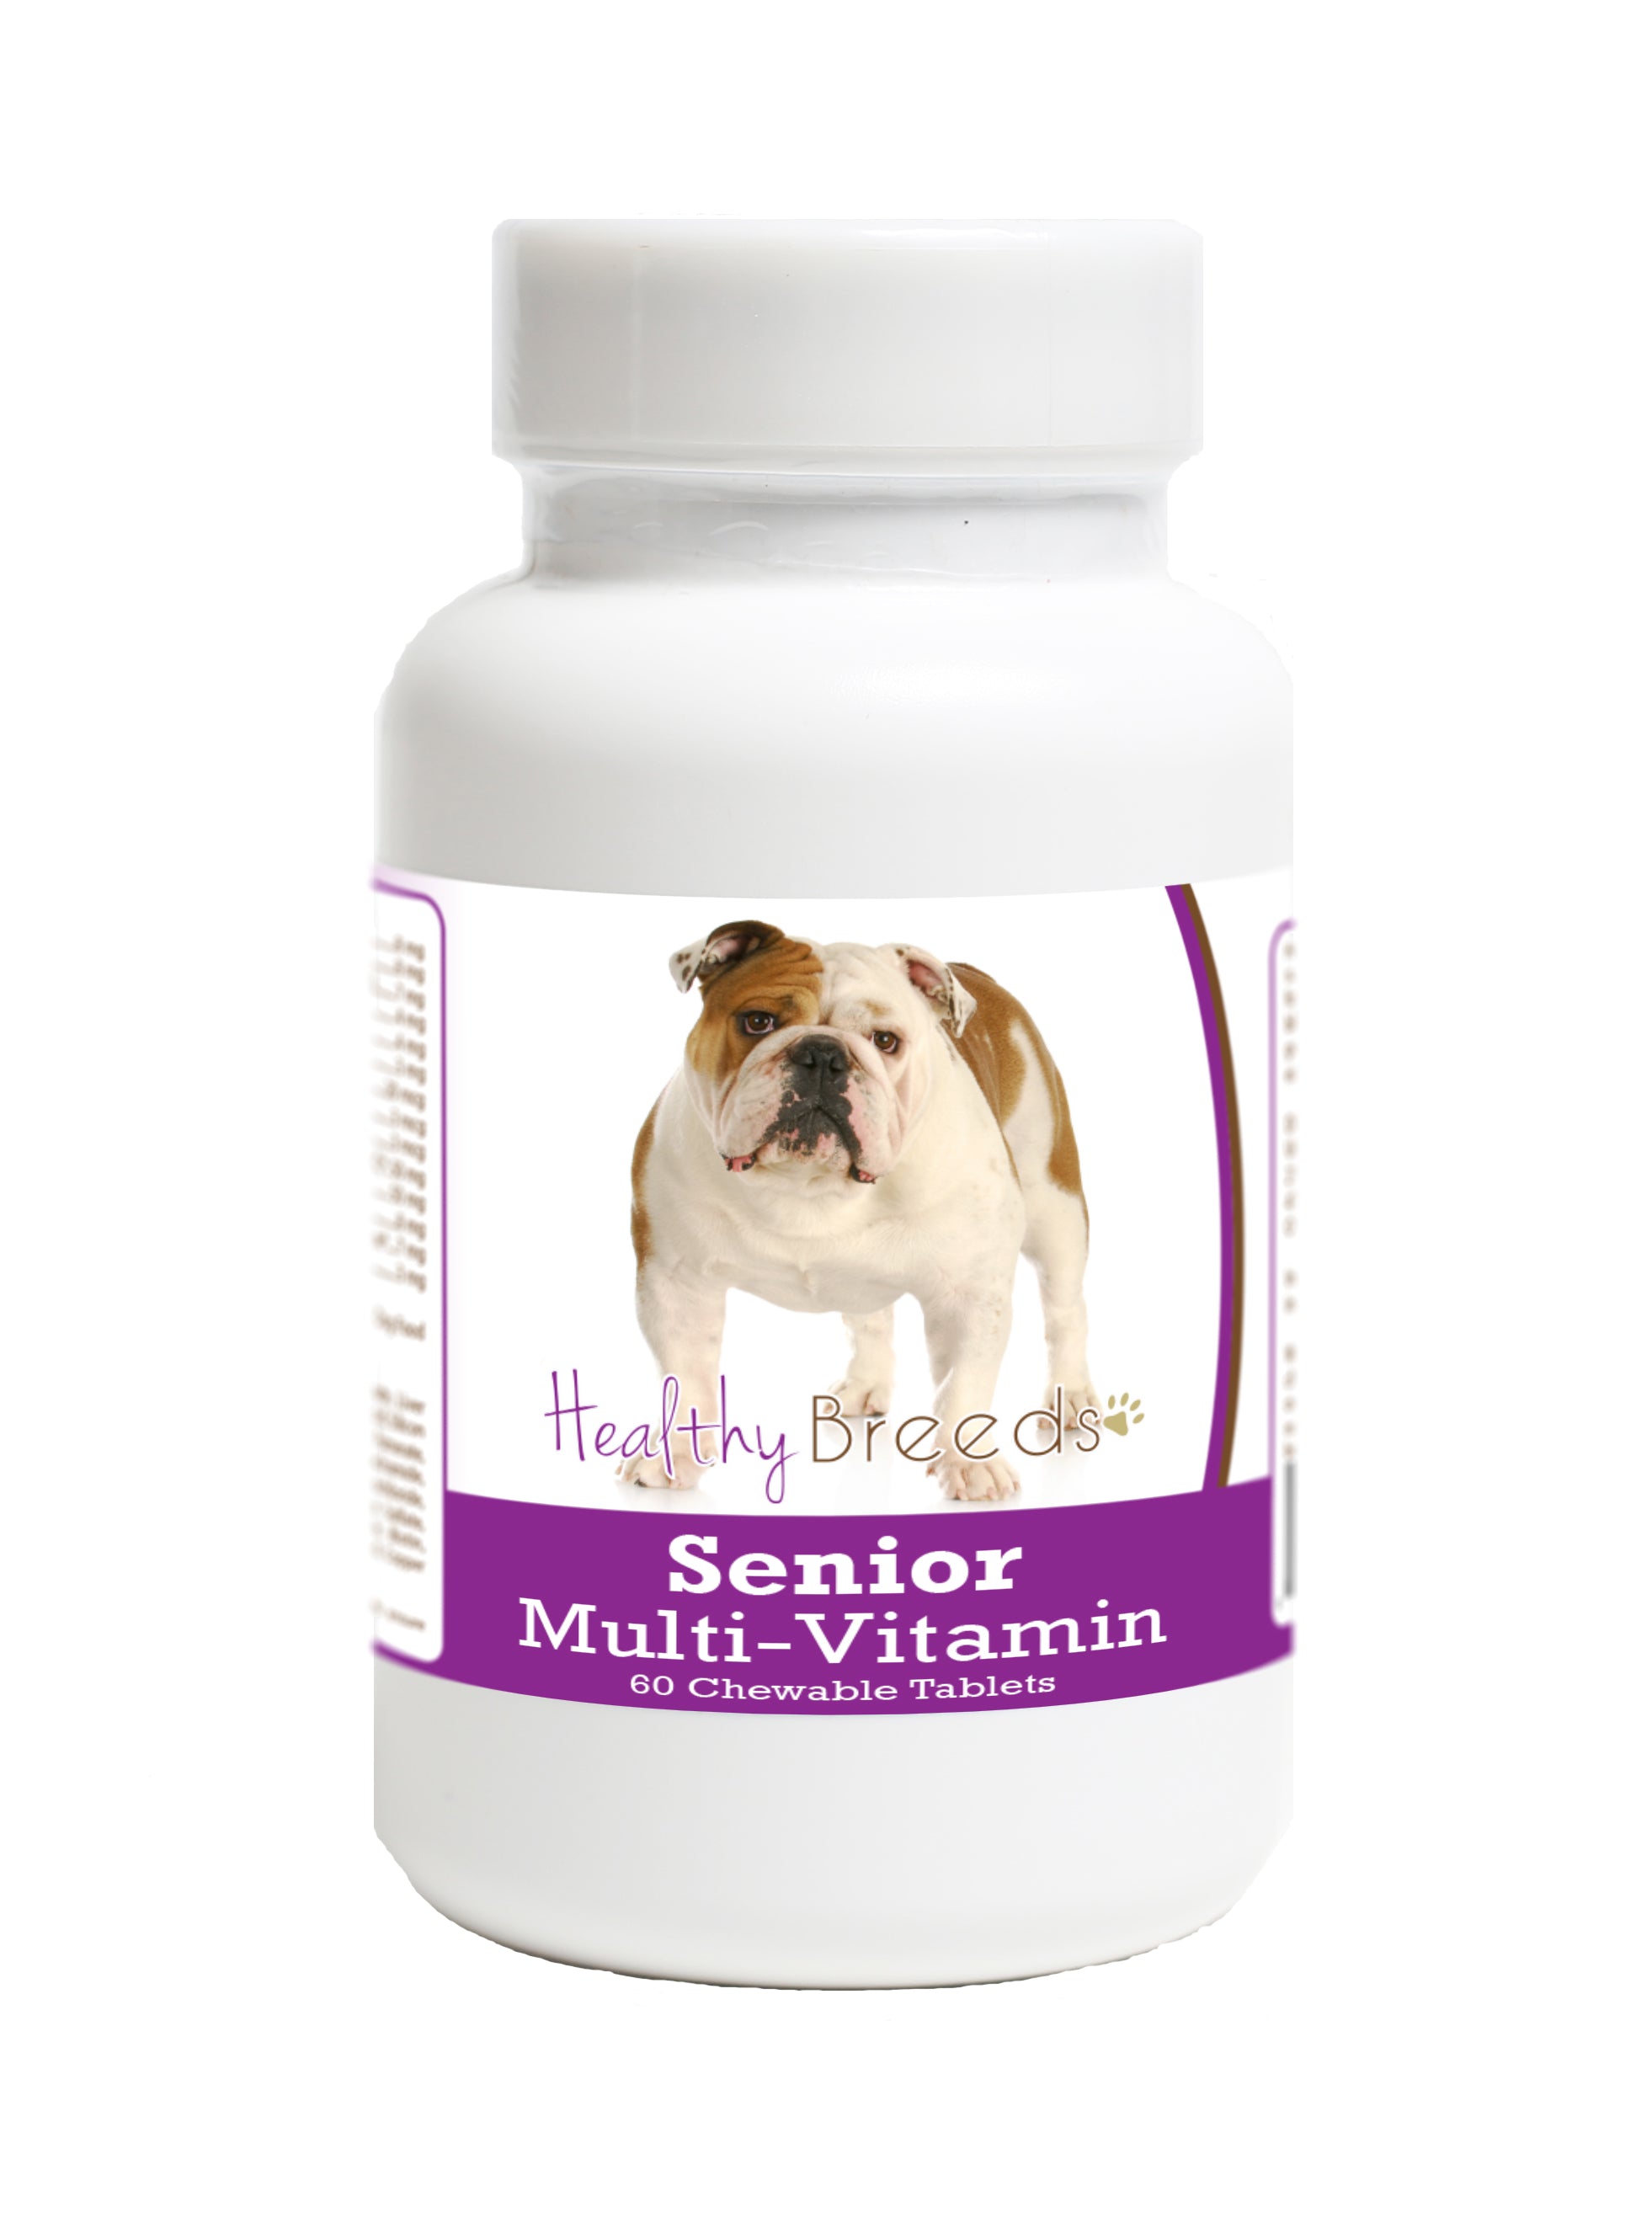 Bulldog Senior Dog Multivitamin Tablets 60 Count